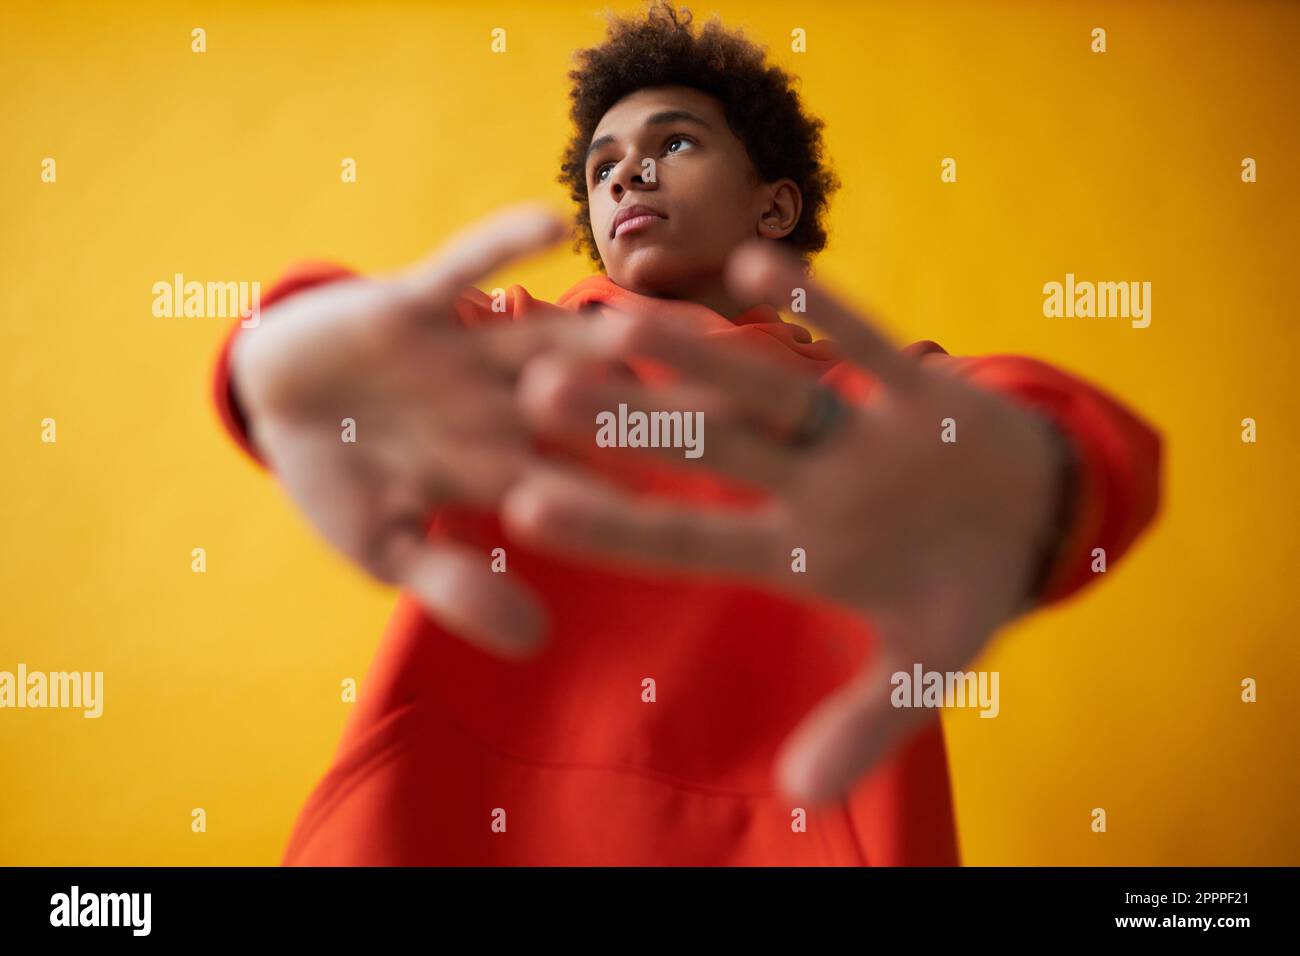 Süßer afroamerikanischer Teenager im roten Hoodie, der sich die Arme vor sich streckt und während der Fotosession auf gelbem Hintergrund posiert Stockfoto